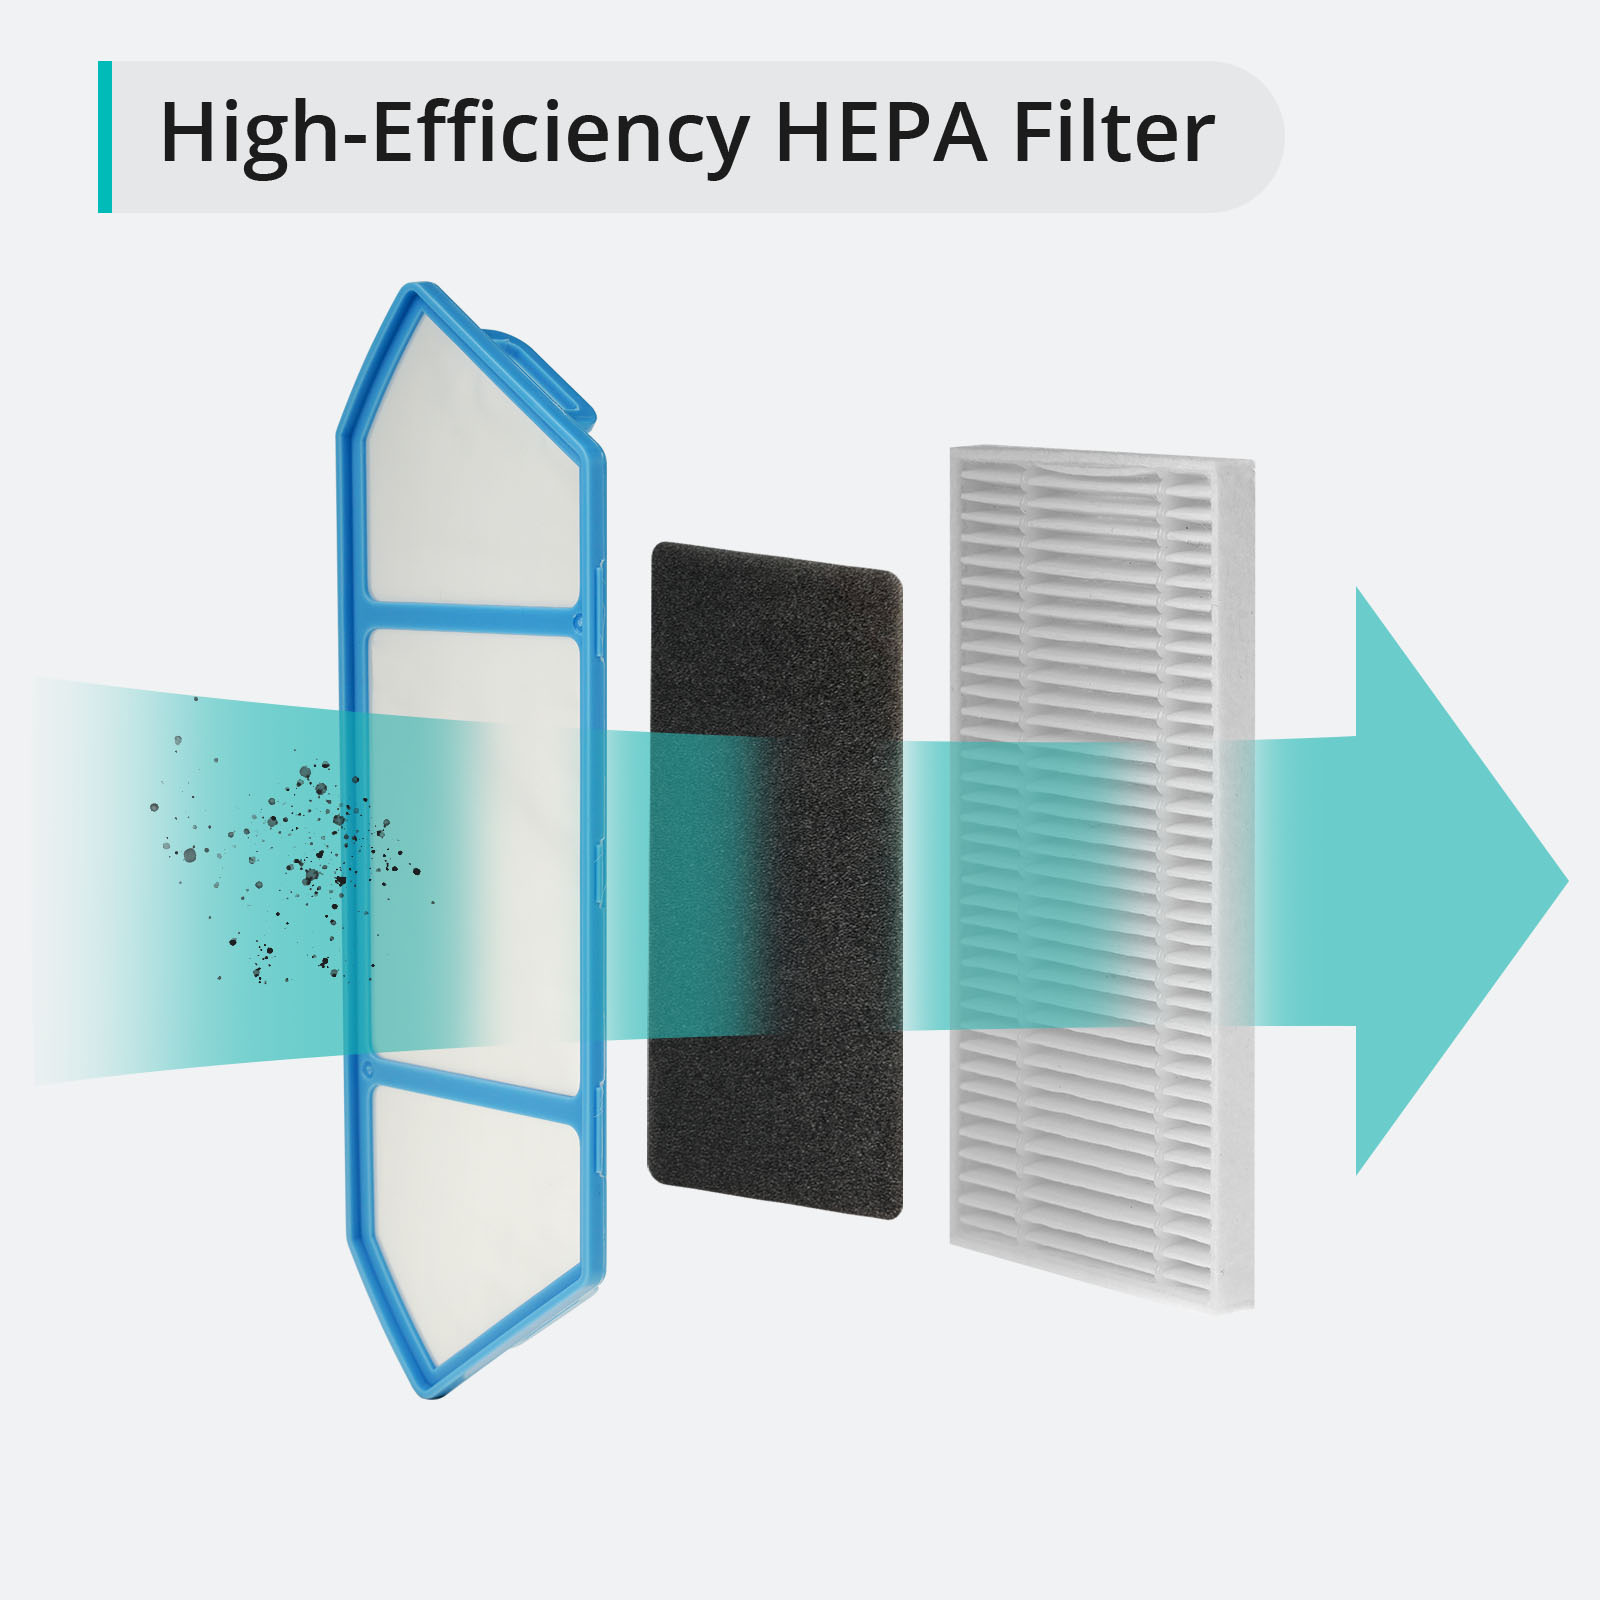 High-Efficiency HEPA Filter